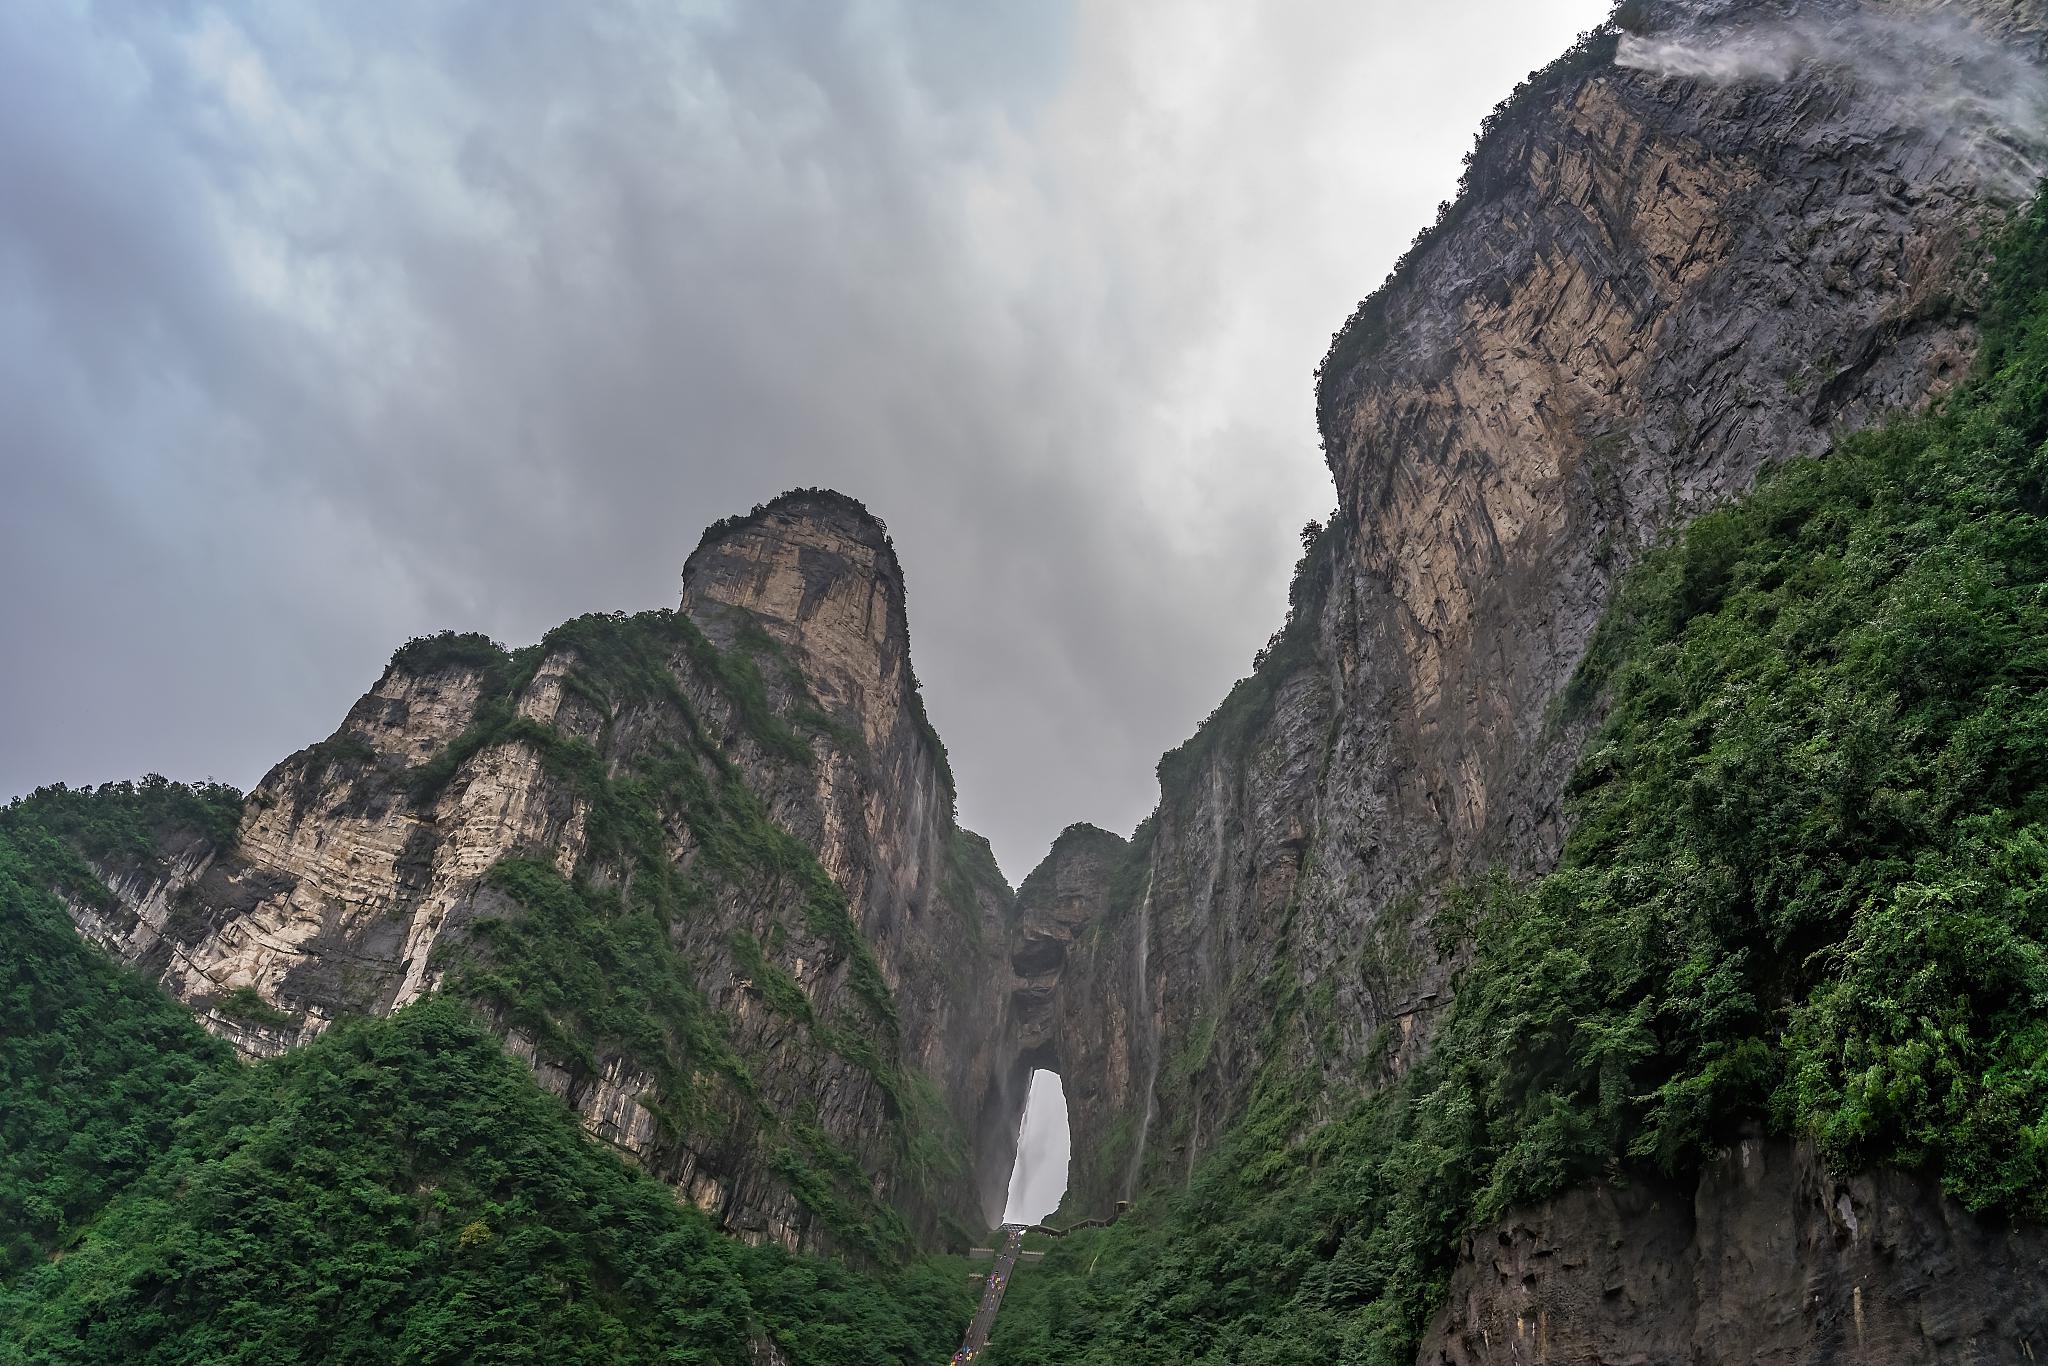 天河山,位于中国河北省邢台市,是一座以爱情文化为主题的山岳景区